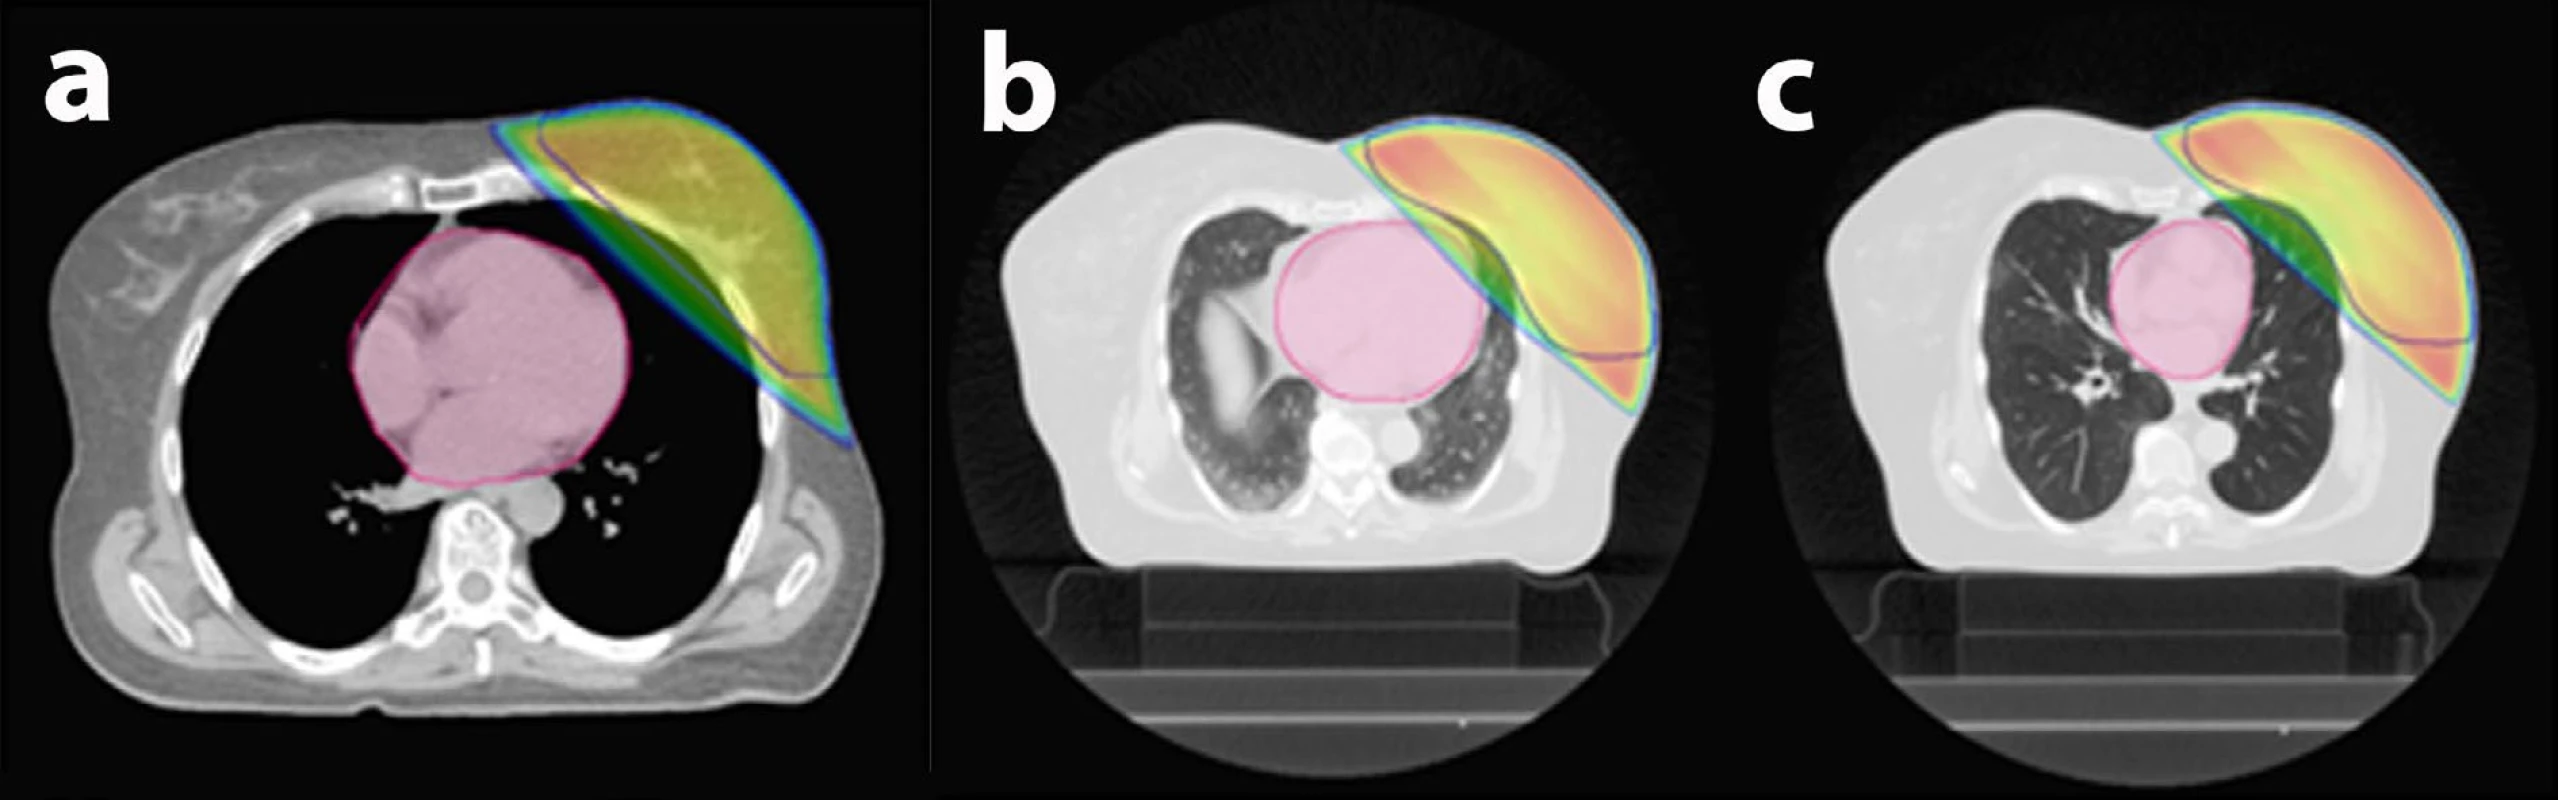 Řízené dýchání při ozařování prsu:<br>
a) Srdce je vzdálené od prsu, nehrozí žádné riziko, standardní 3D technika radioterapie fotony lineárního urychlovače.<br>
b) Srdce leží v blízkosti prsu a část záření skrz něj prochází, proto lékař rozhodne o ozařování v nádechu.<br>
c) Ozařování v nádechu („řízené dýchání“) – na ozařovacím plánu je patrné výrazné zlepšení ve smyslu ochrany srdce před zářením.<br>
Barevné linie v obrázcích: růžová barva – srdce; modrá linie – objem ozařovaného prsu; barevná plocha – ozářená oblast.